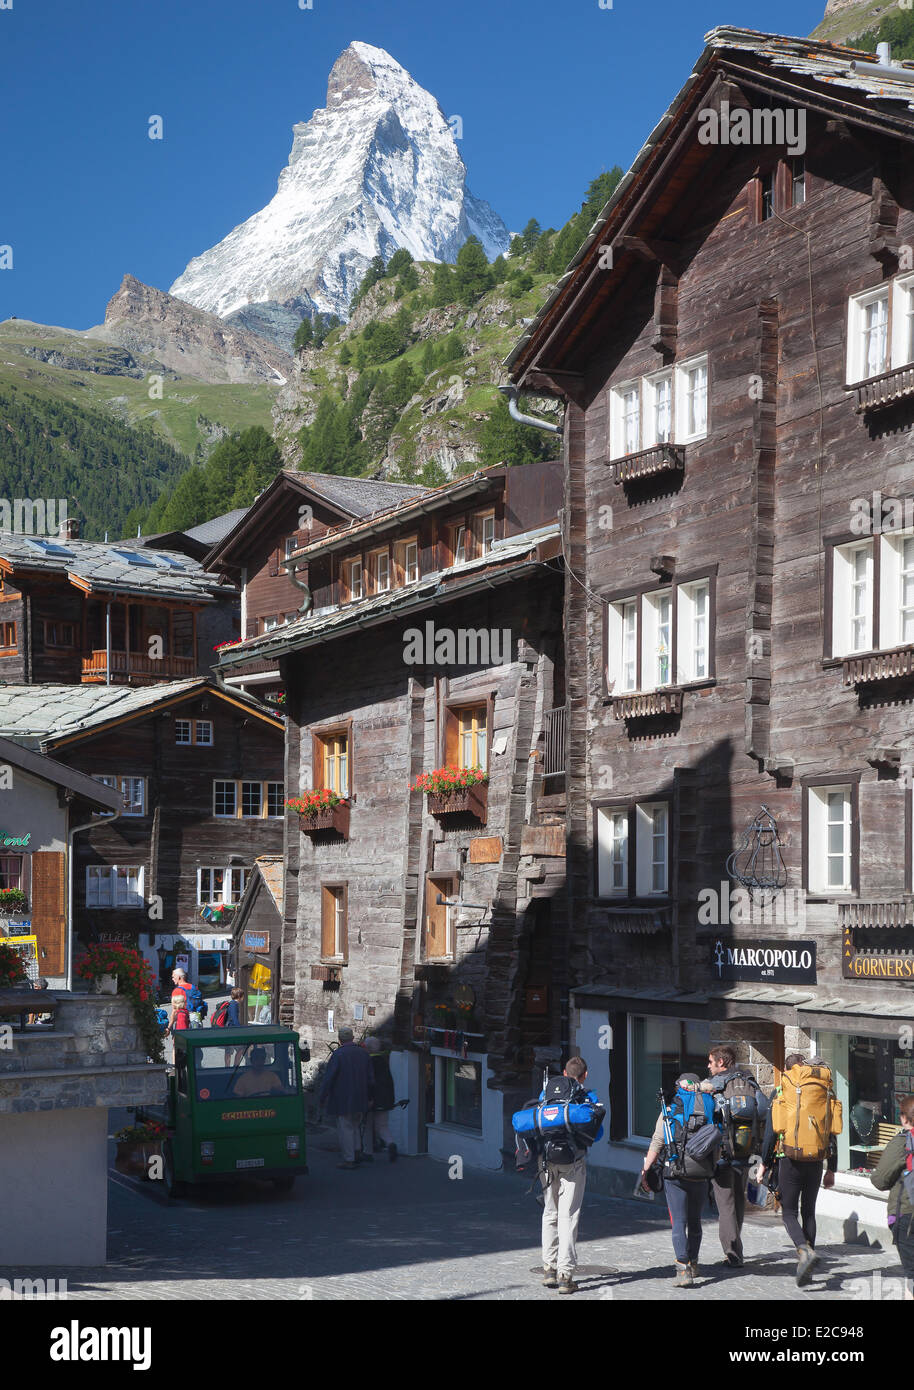 La Suisse, Canton du Valais, Zermatt, le vieux village et le Mont Cervin (4478 m) Banque D'Images